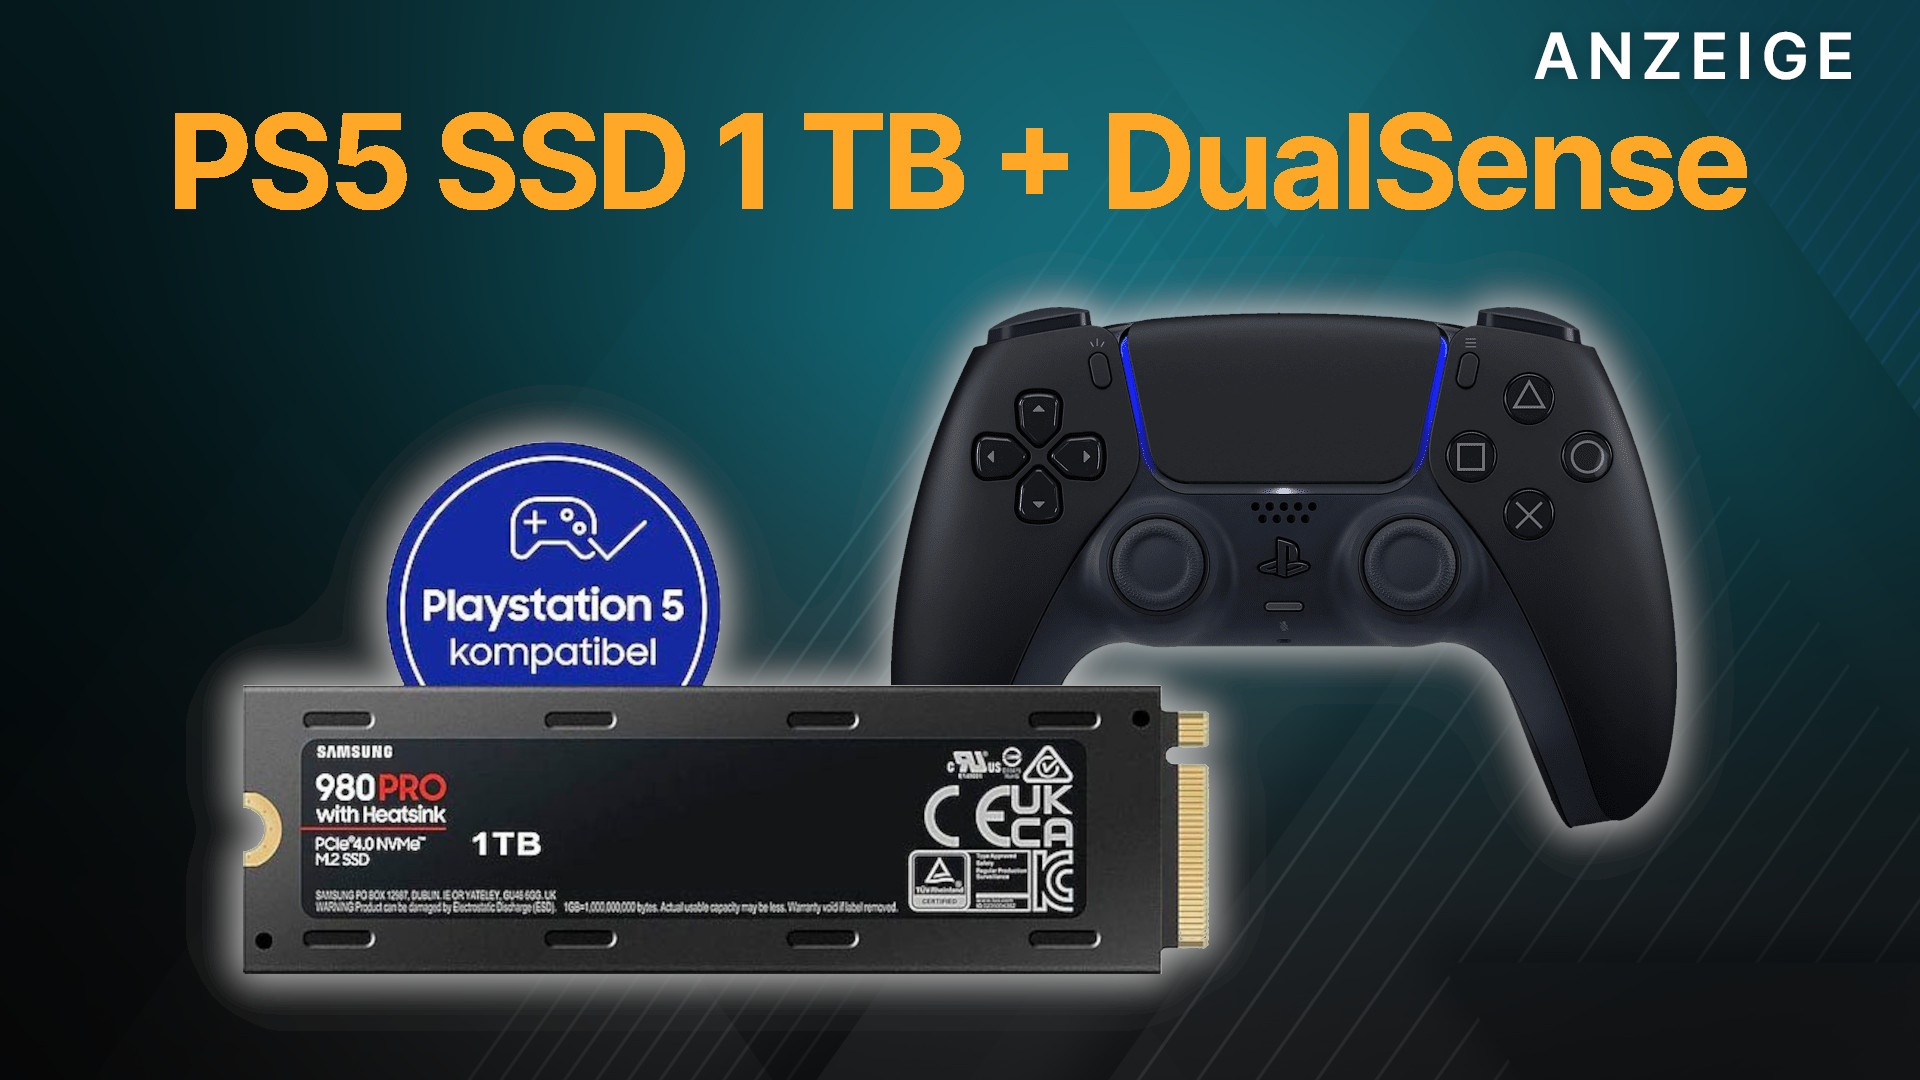 Günstiges Bundle für PS5: SSD mit 1 TB & Heatsink + DualSense Controller  zum Toppreis